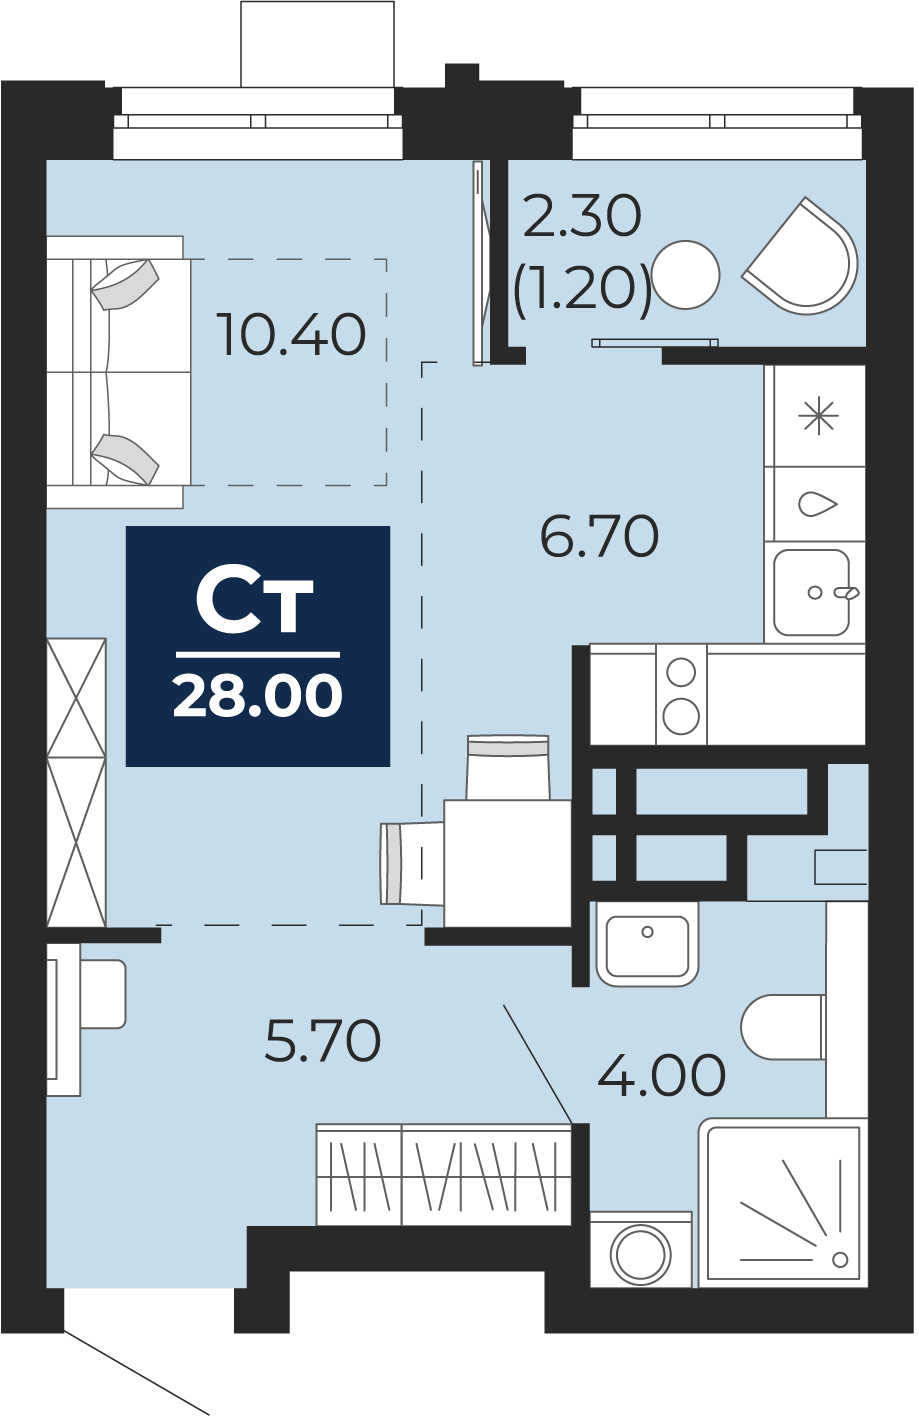 Квартира № 170, Студия, 28 кв. м, 12 этаж